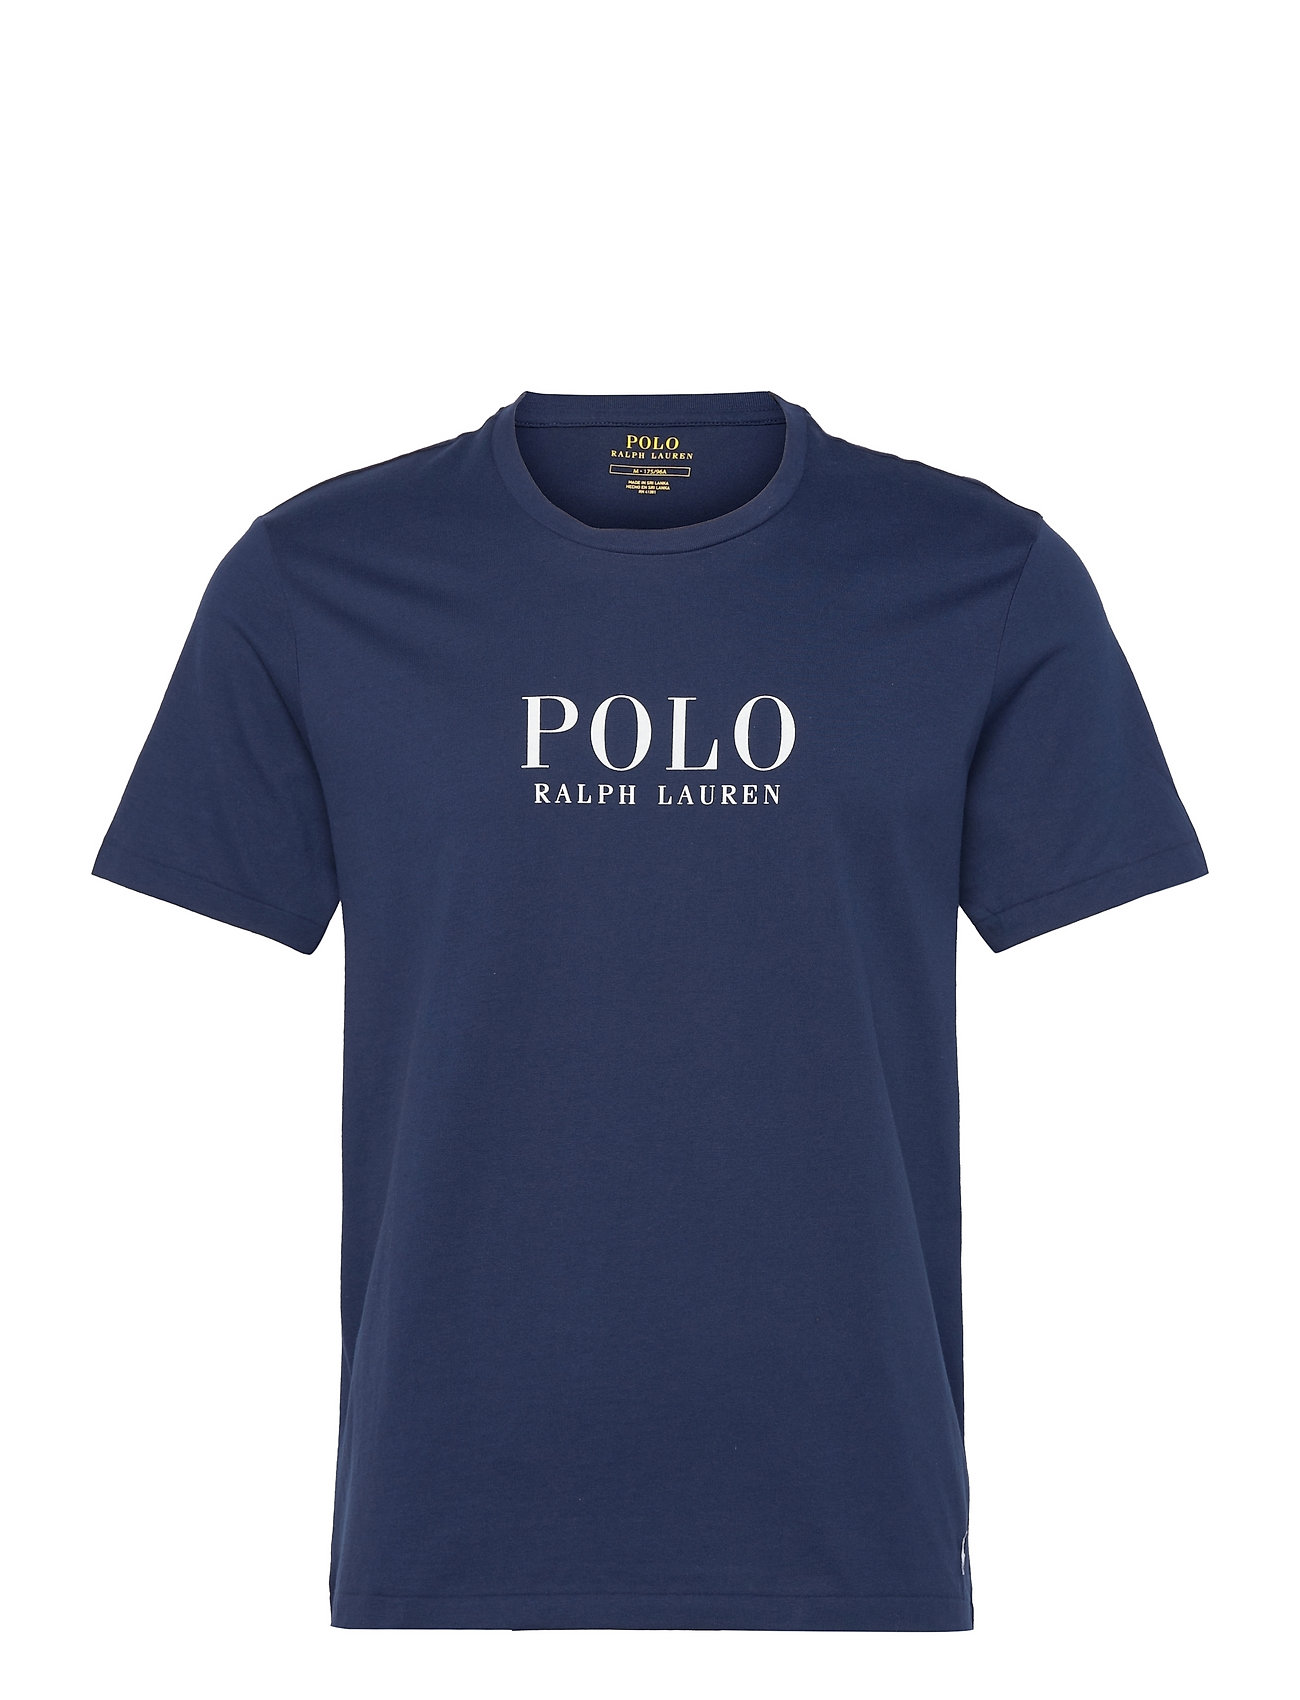 Polo Ralph Lauren Underwear Logo Cotton Jersey T-Shirt Blue Polo Ralph Lauren Underwear